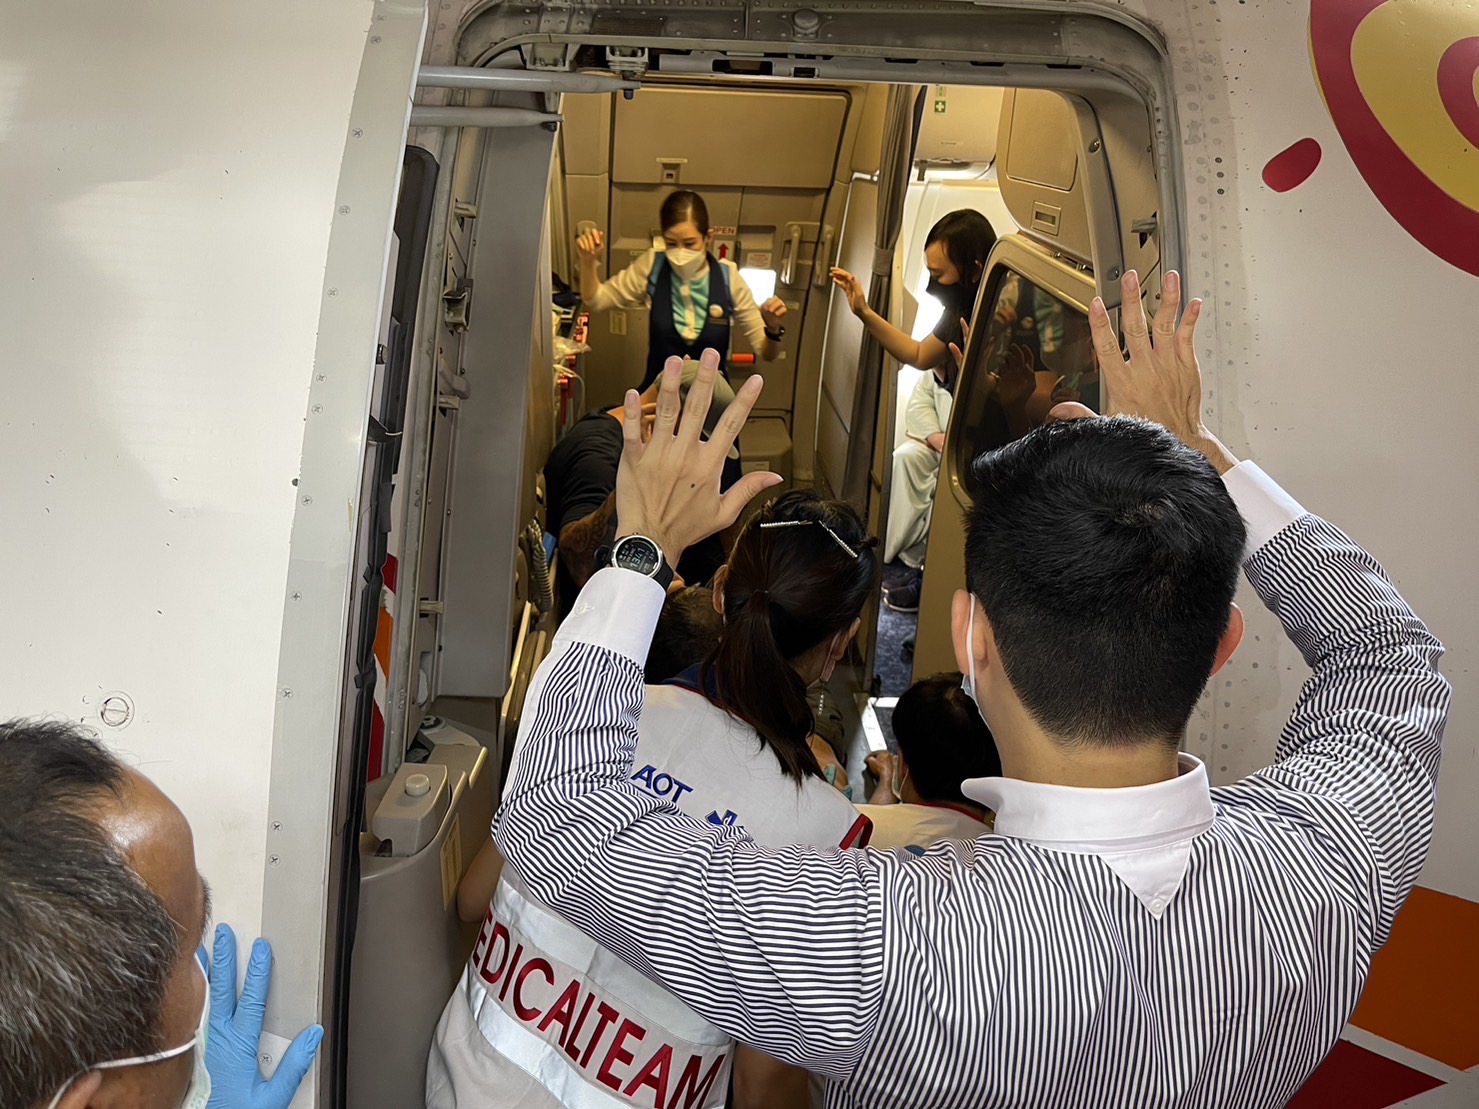 ทีมแพทย์และทีมกู้ภัยท่าอากาศยานเชียงใหม่ ช่วยฟื้นคืนชีพชายชาวอเมริกัน หลังหมดสติและชีพจรหยุดเต้น บนเครื่องบิน ขณะเตรียมลงจอดสนามบินเชียงใหม่